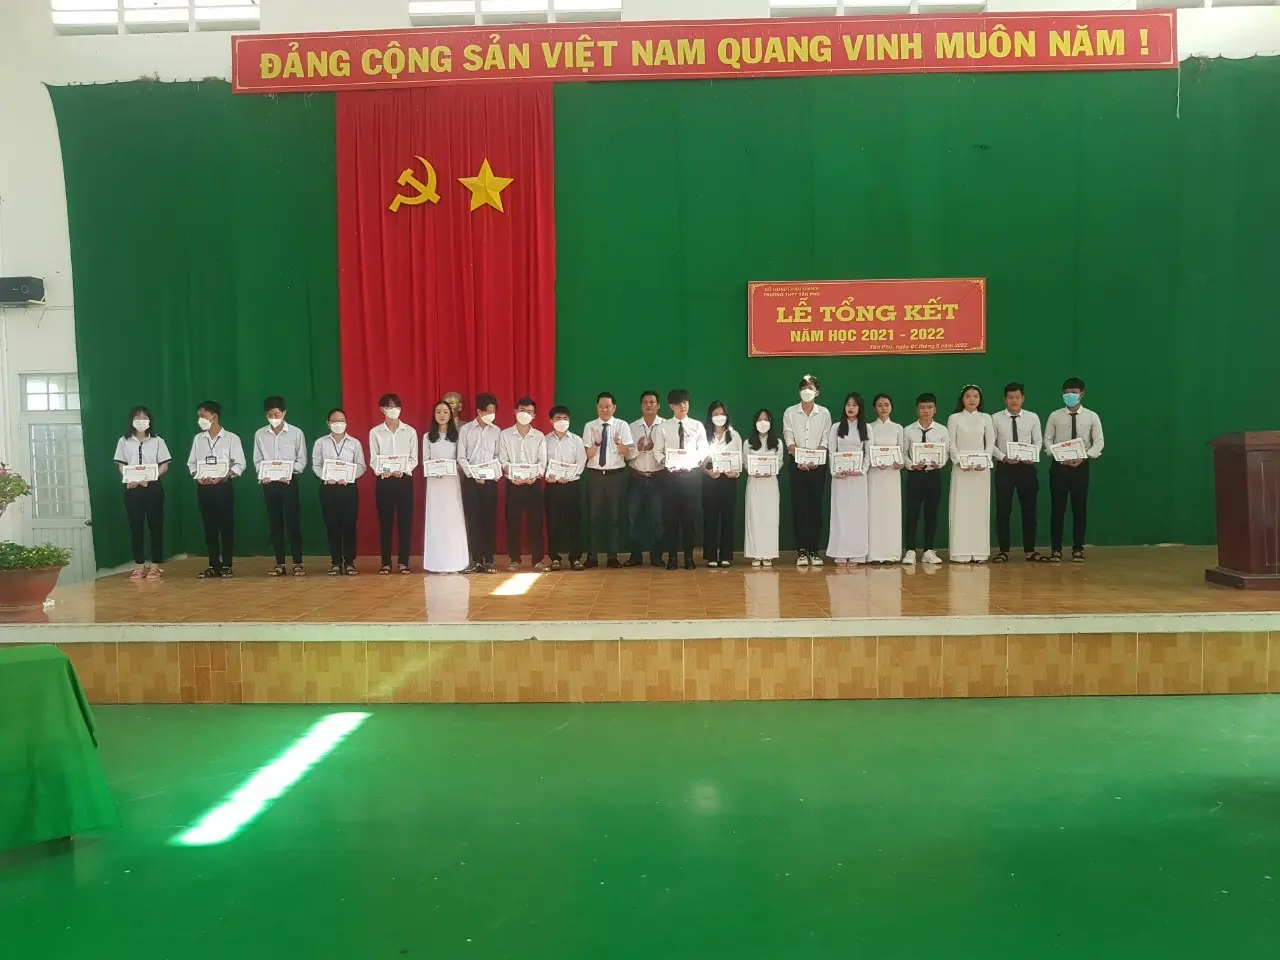 Đánh Giá Trường THPT Tân Phú - Hậu Giang Có Tốt Không